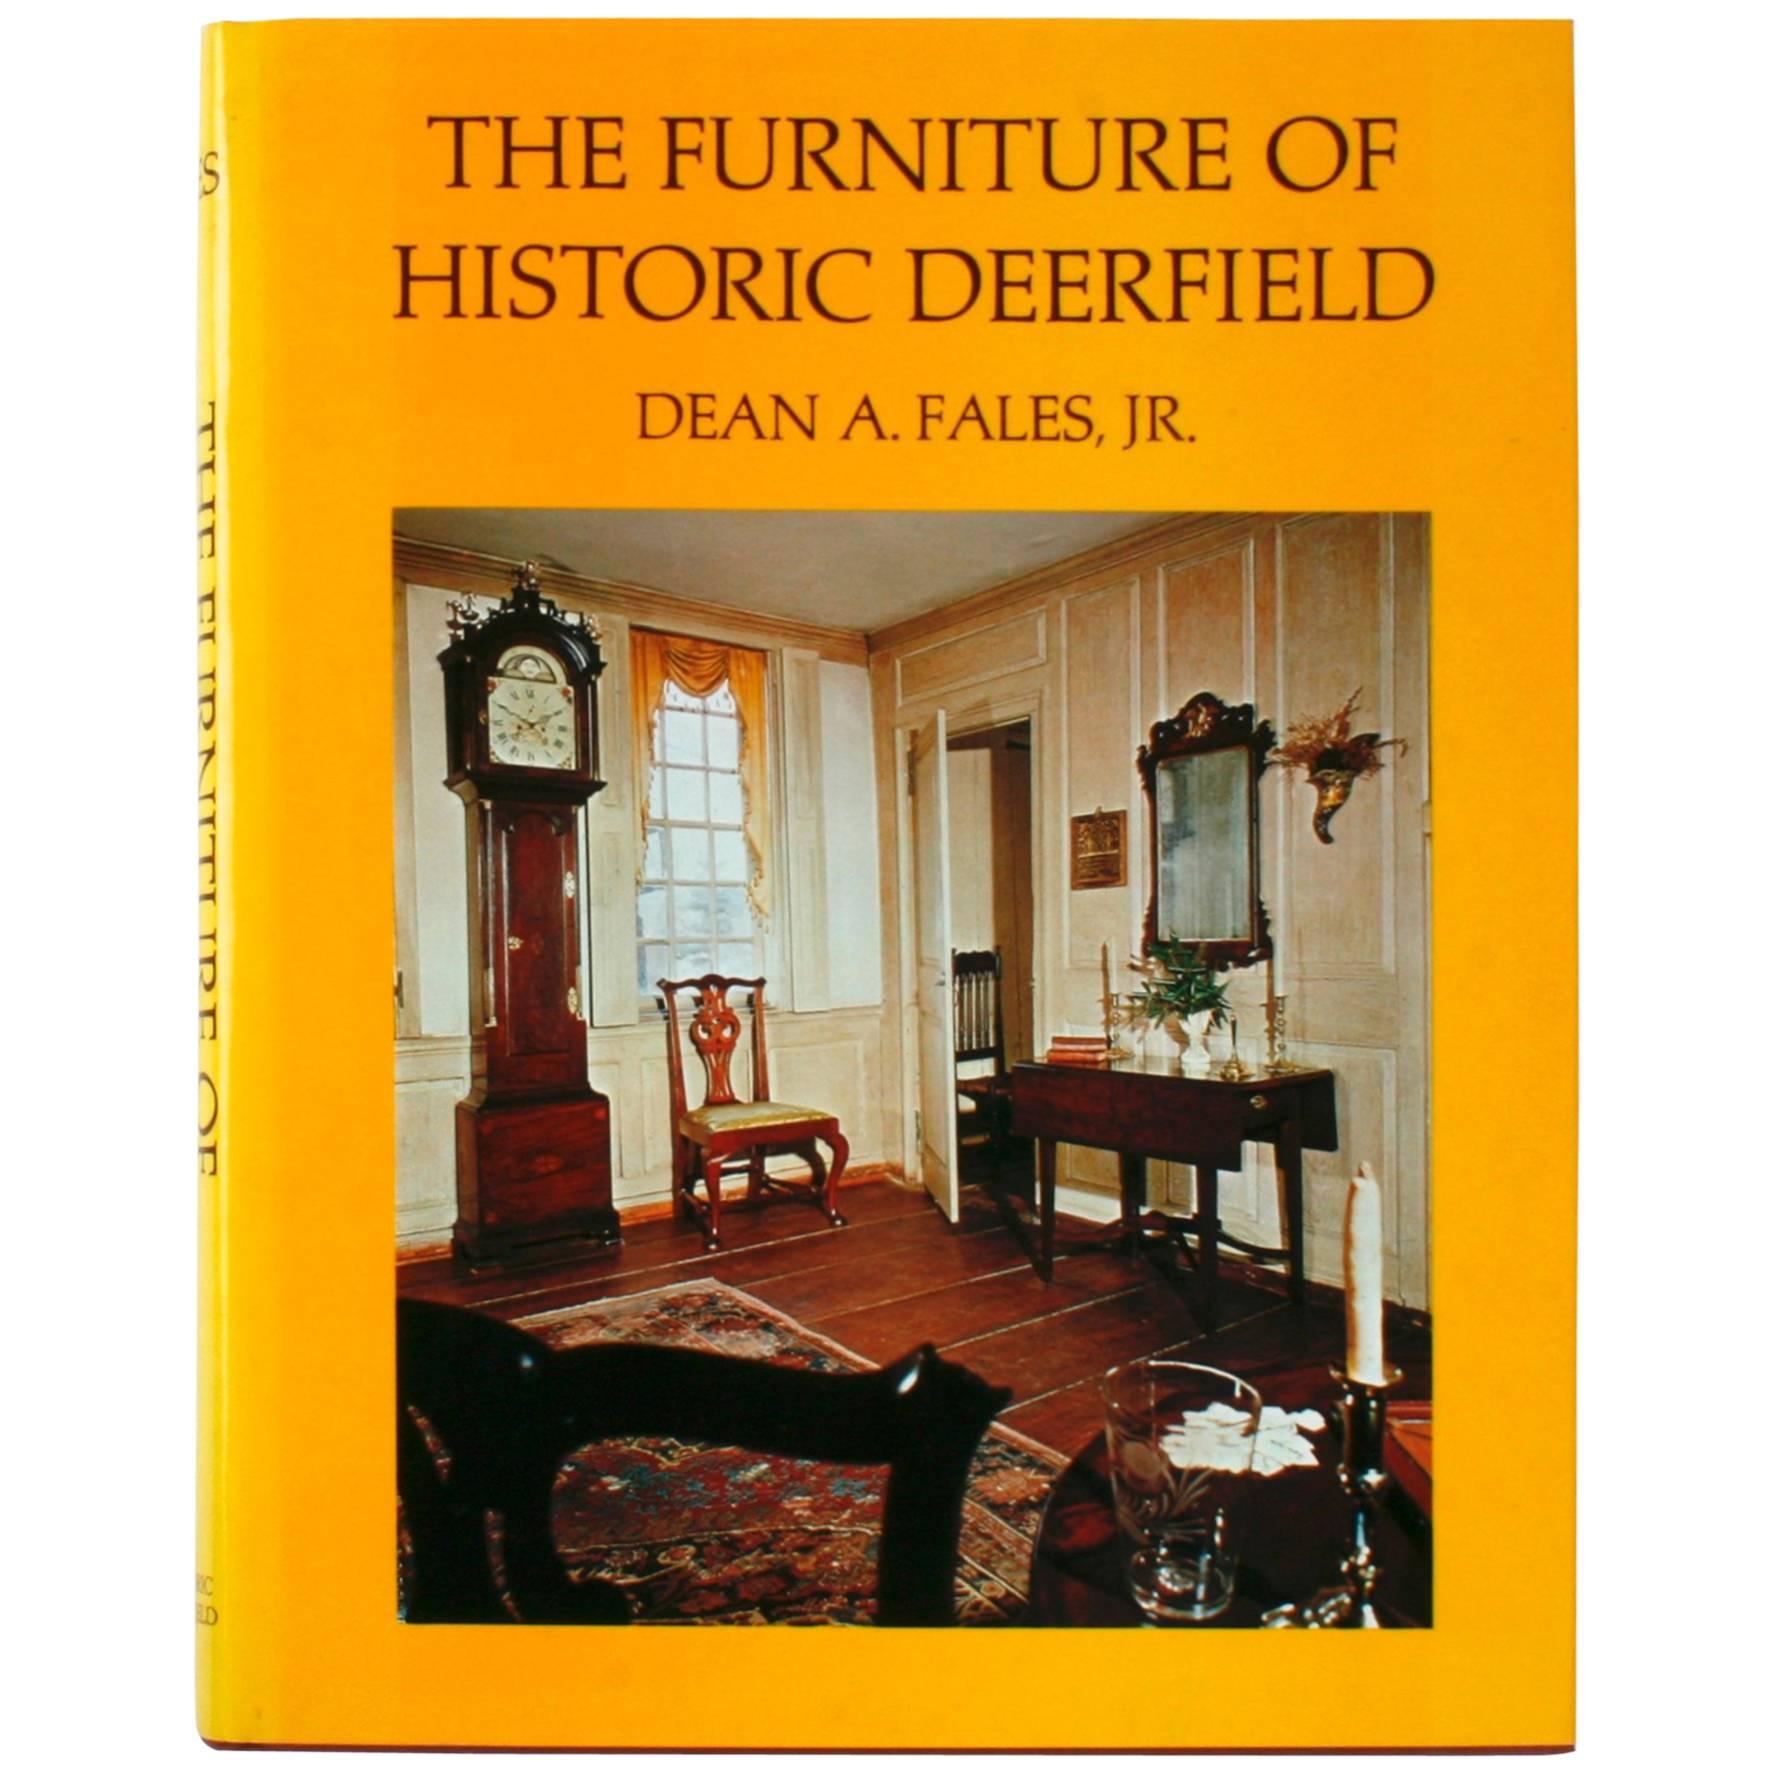 Meubles historiques Deerfield de Dean A. Fales, Jr.